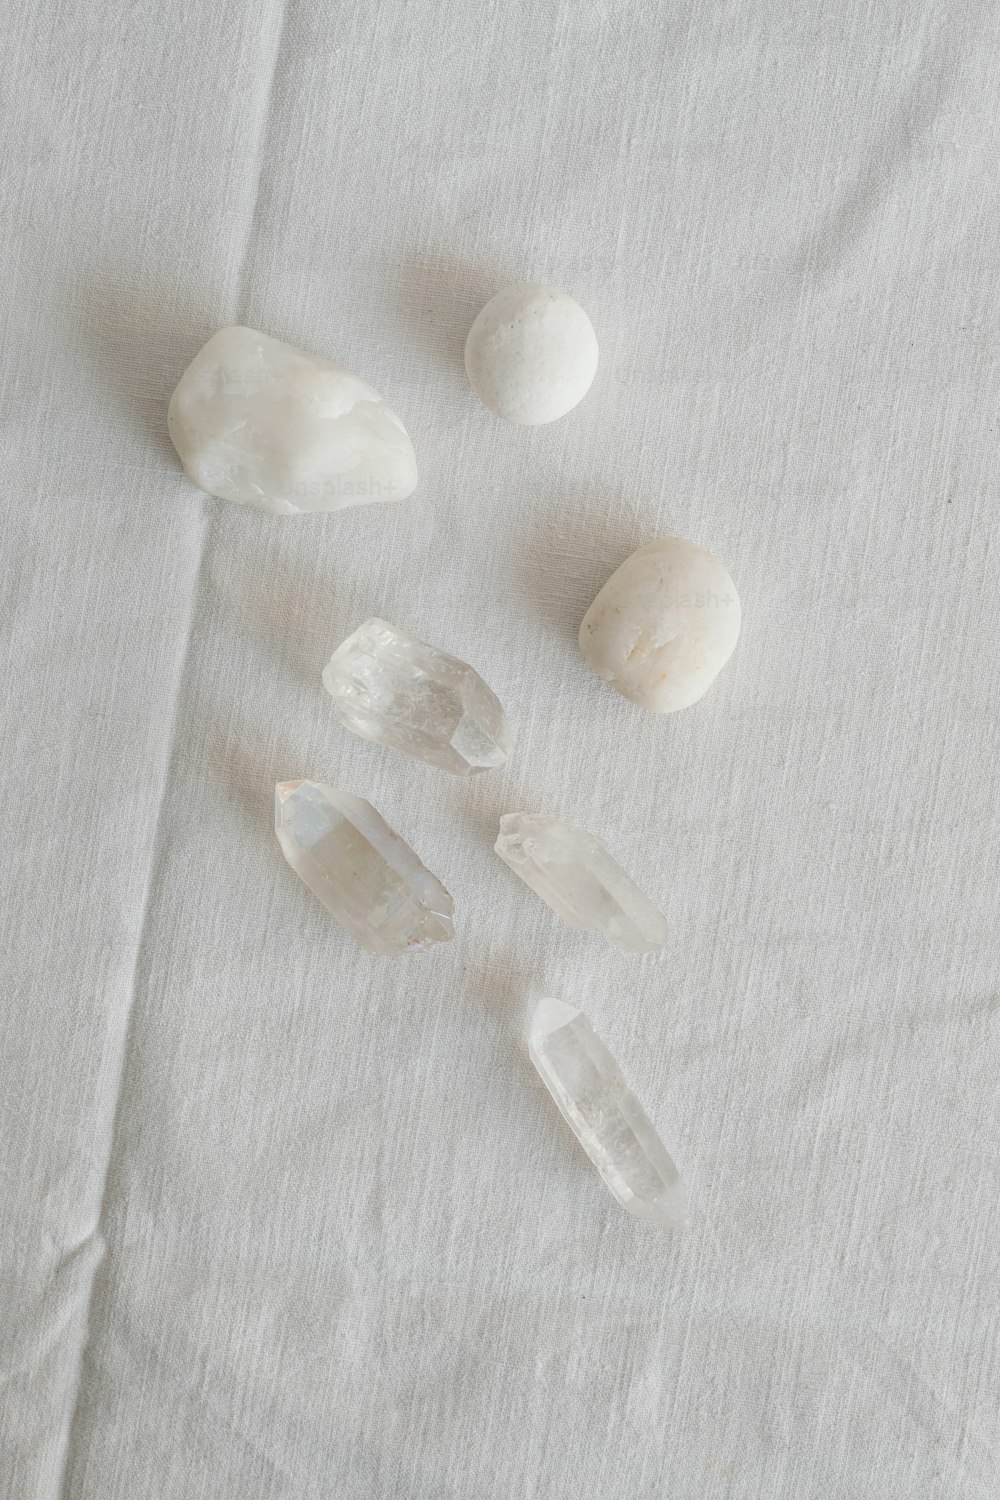 un gruppo di rocce sedute sopra un panno bianco